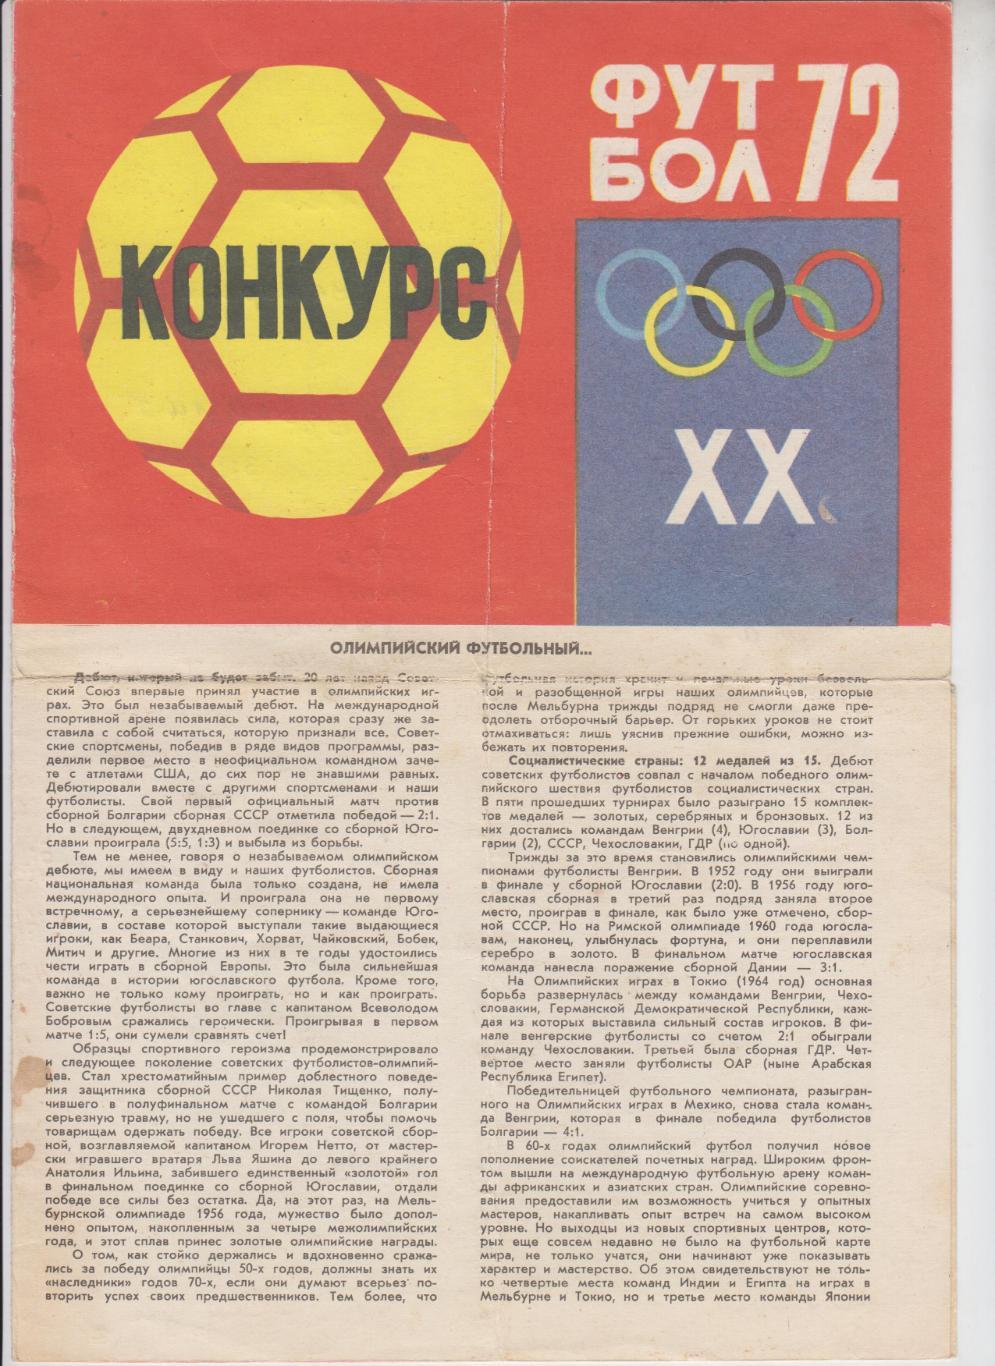 официальный буклет - Олимпиада 1972 Мюнхен Германия футбол - СССР